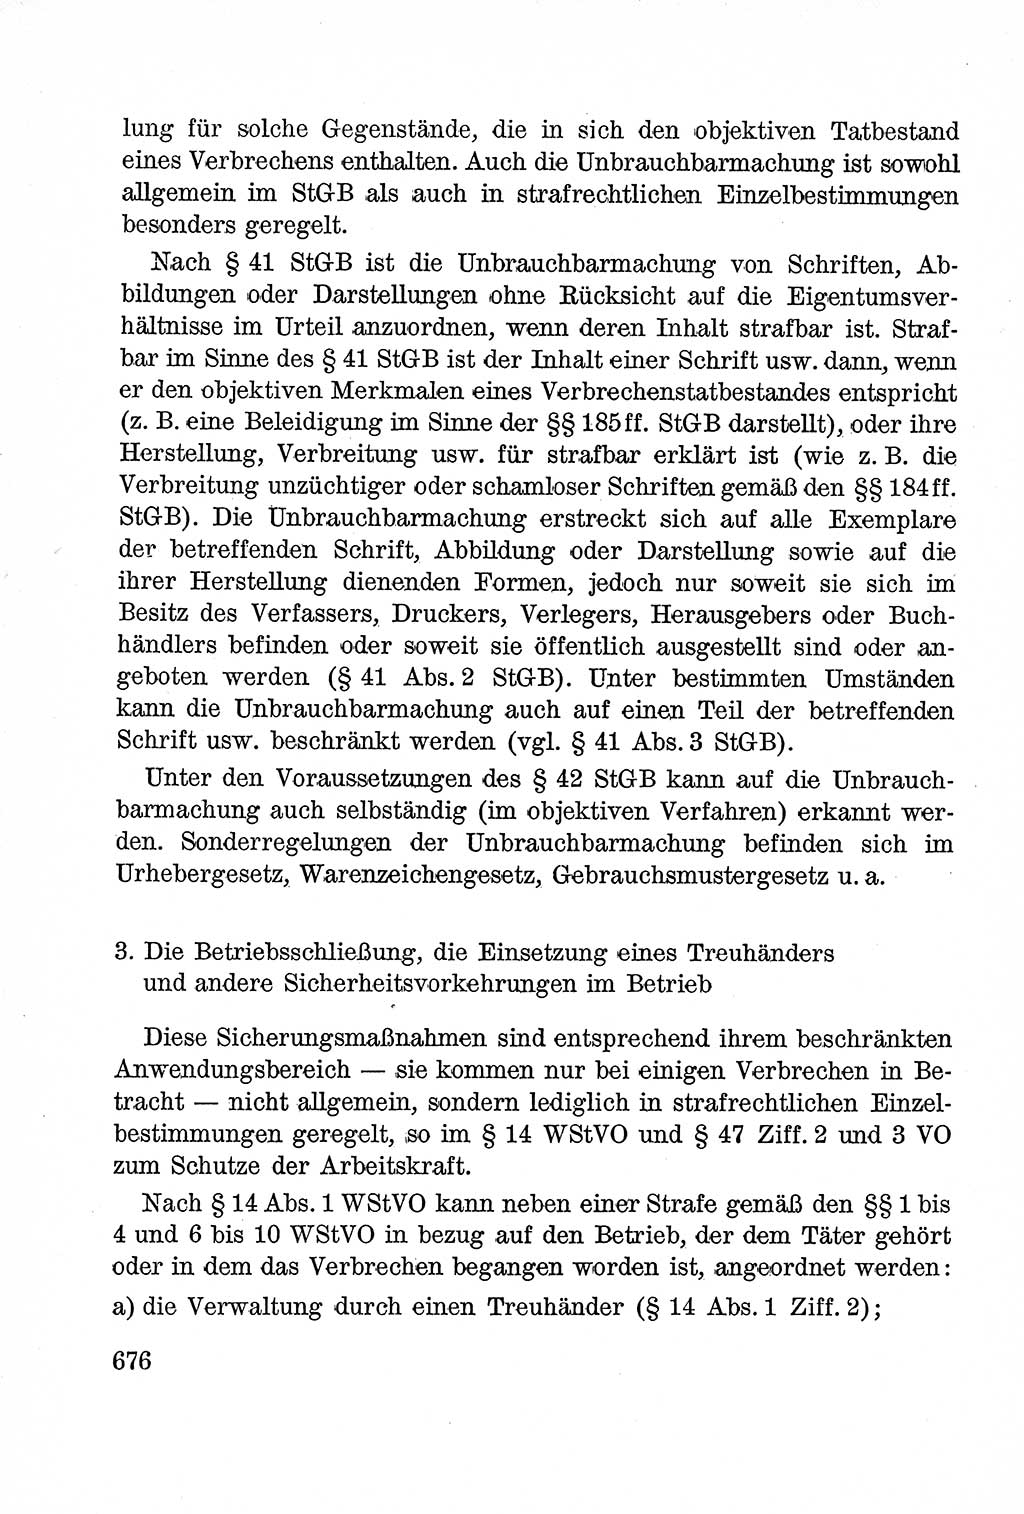 Lehrbuch des Strafrechts der Deutschen Demokratischen Republik (DDR), Allgemeiner Teil 1957, Seite 676 (Lb. Strafr. DDR AT 1957, S. 676)